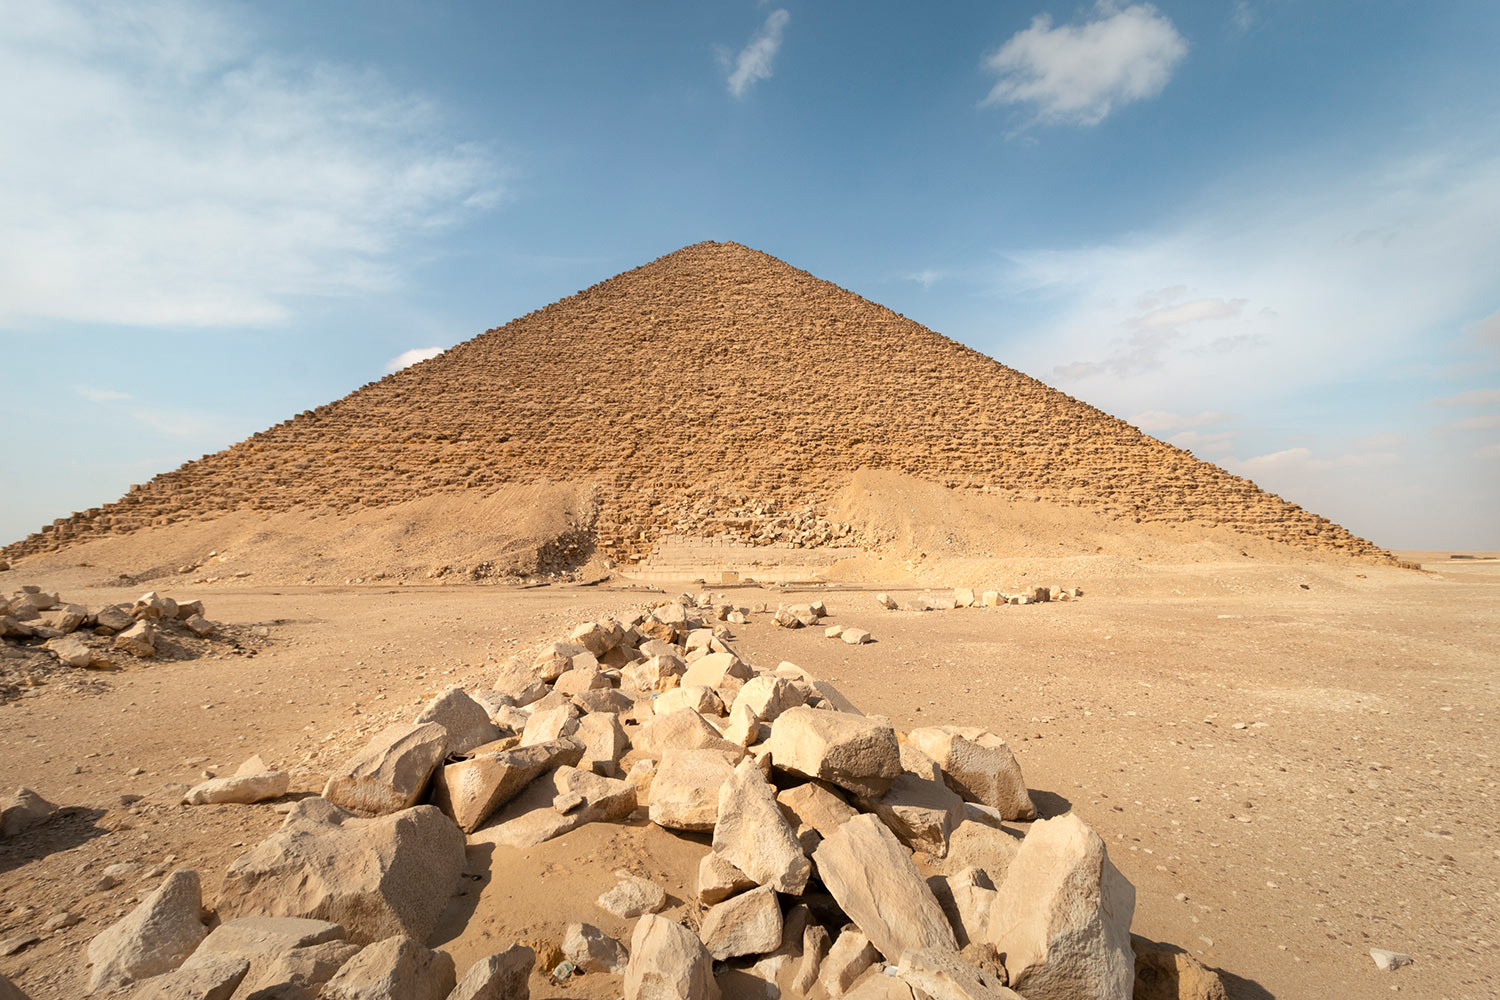 Pyramide rouge, Dahchour, Égypte / Red Pyramid, Dahshur, Egypt